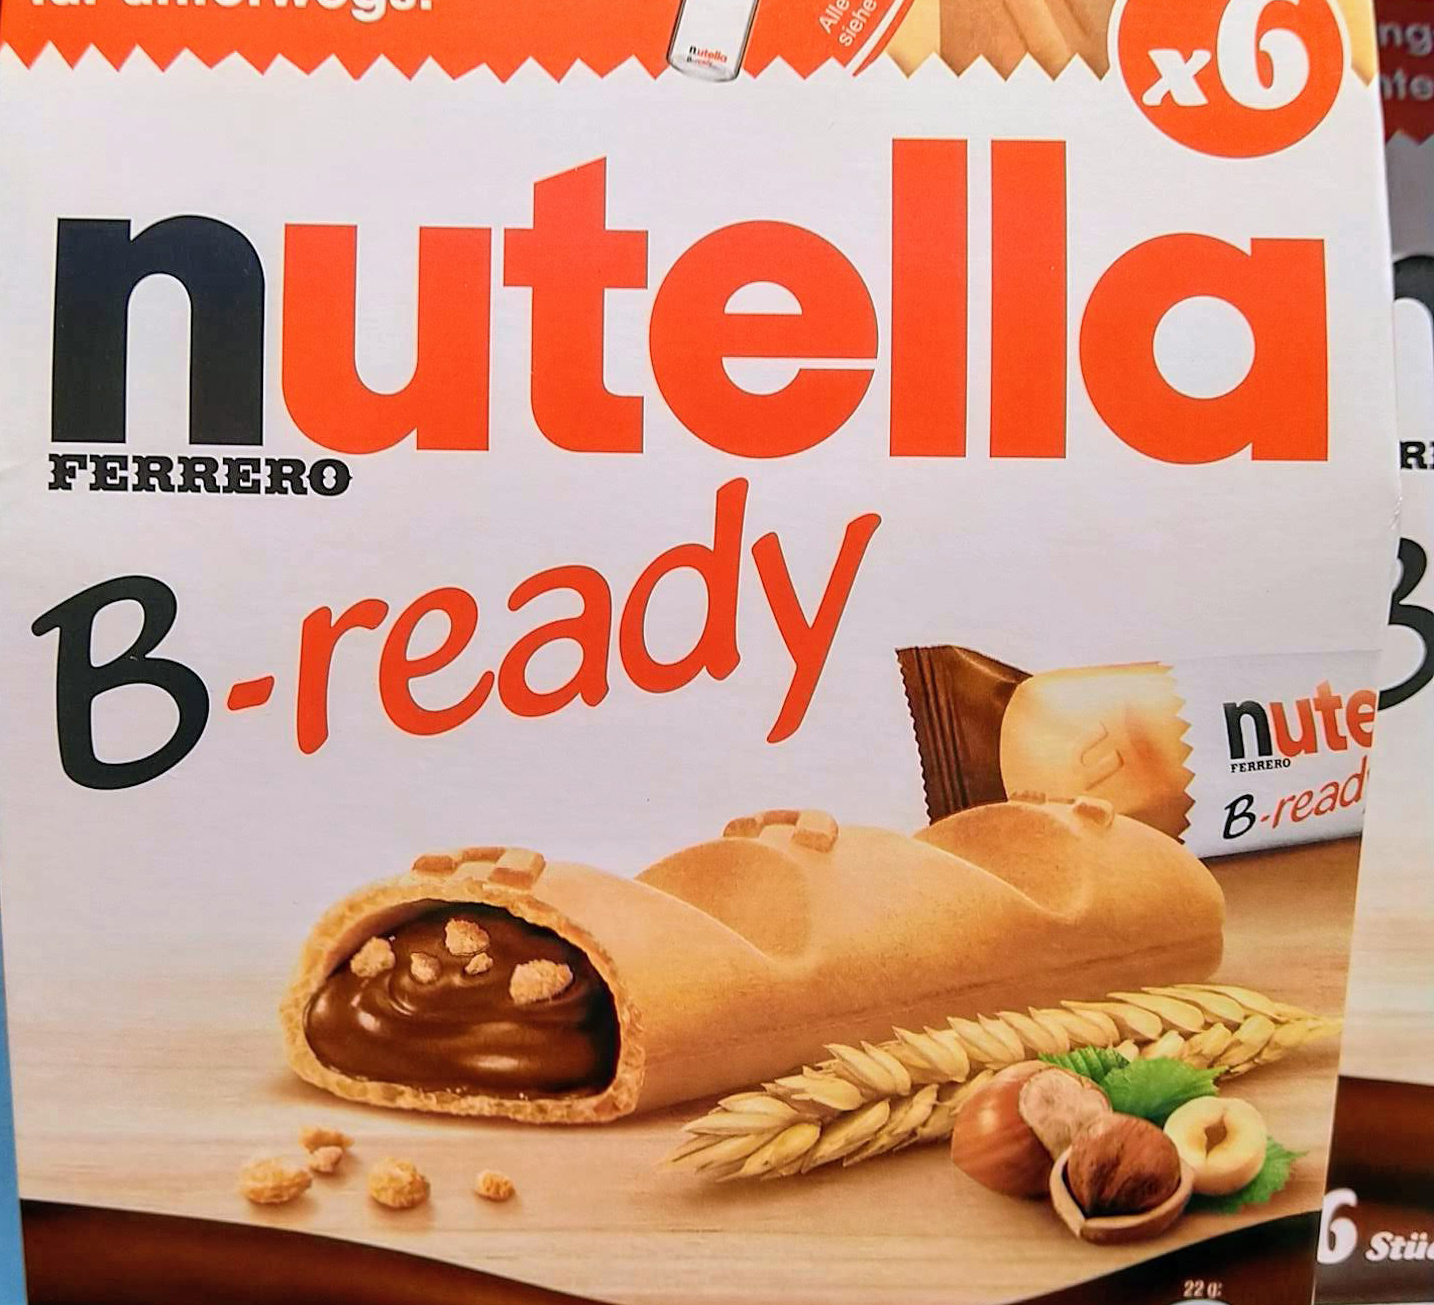 Nutella B-Ready: Voll mein Tag - Gewinnspiel und Instagram-Challenge